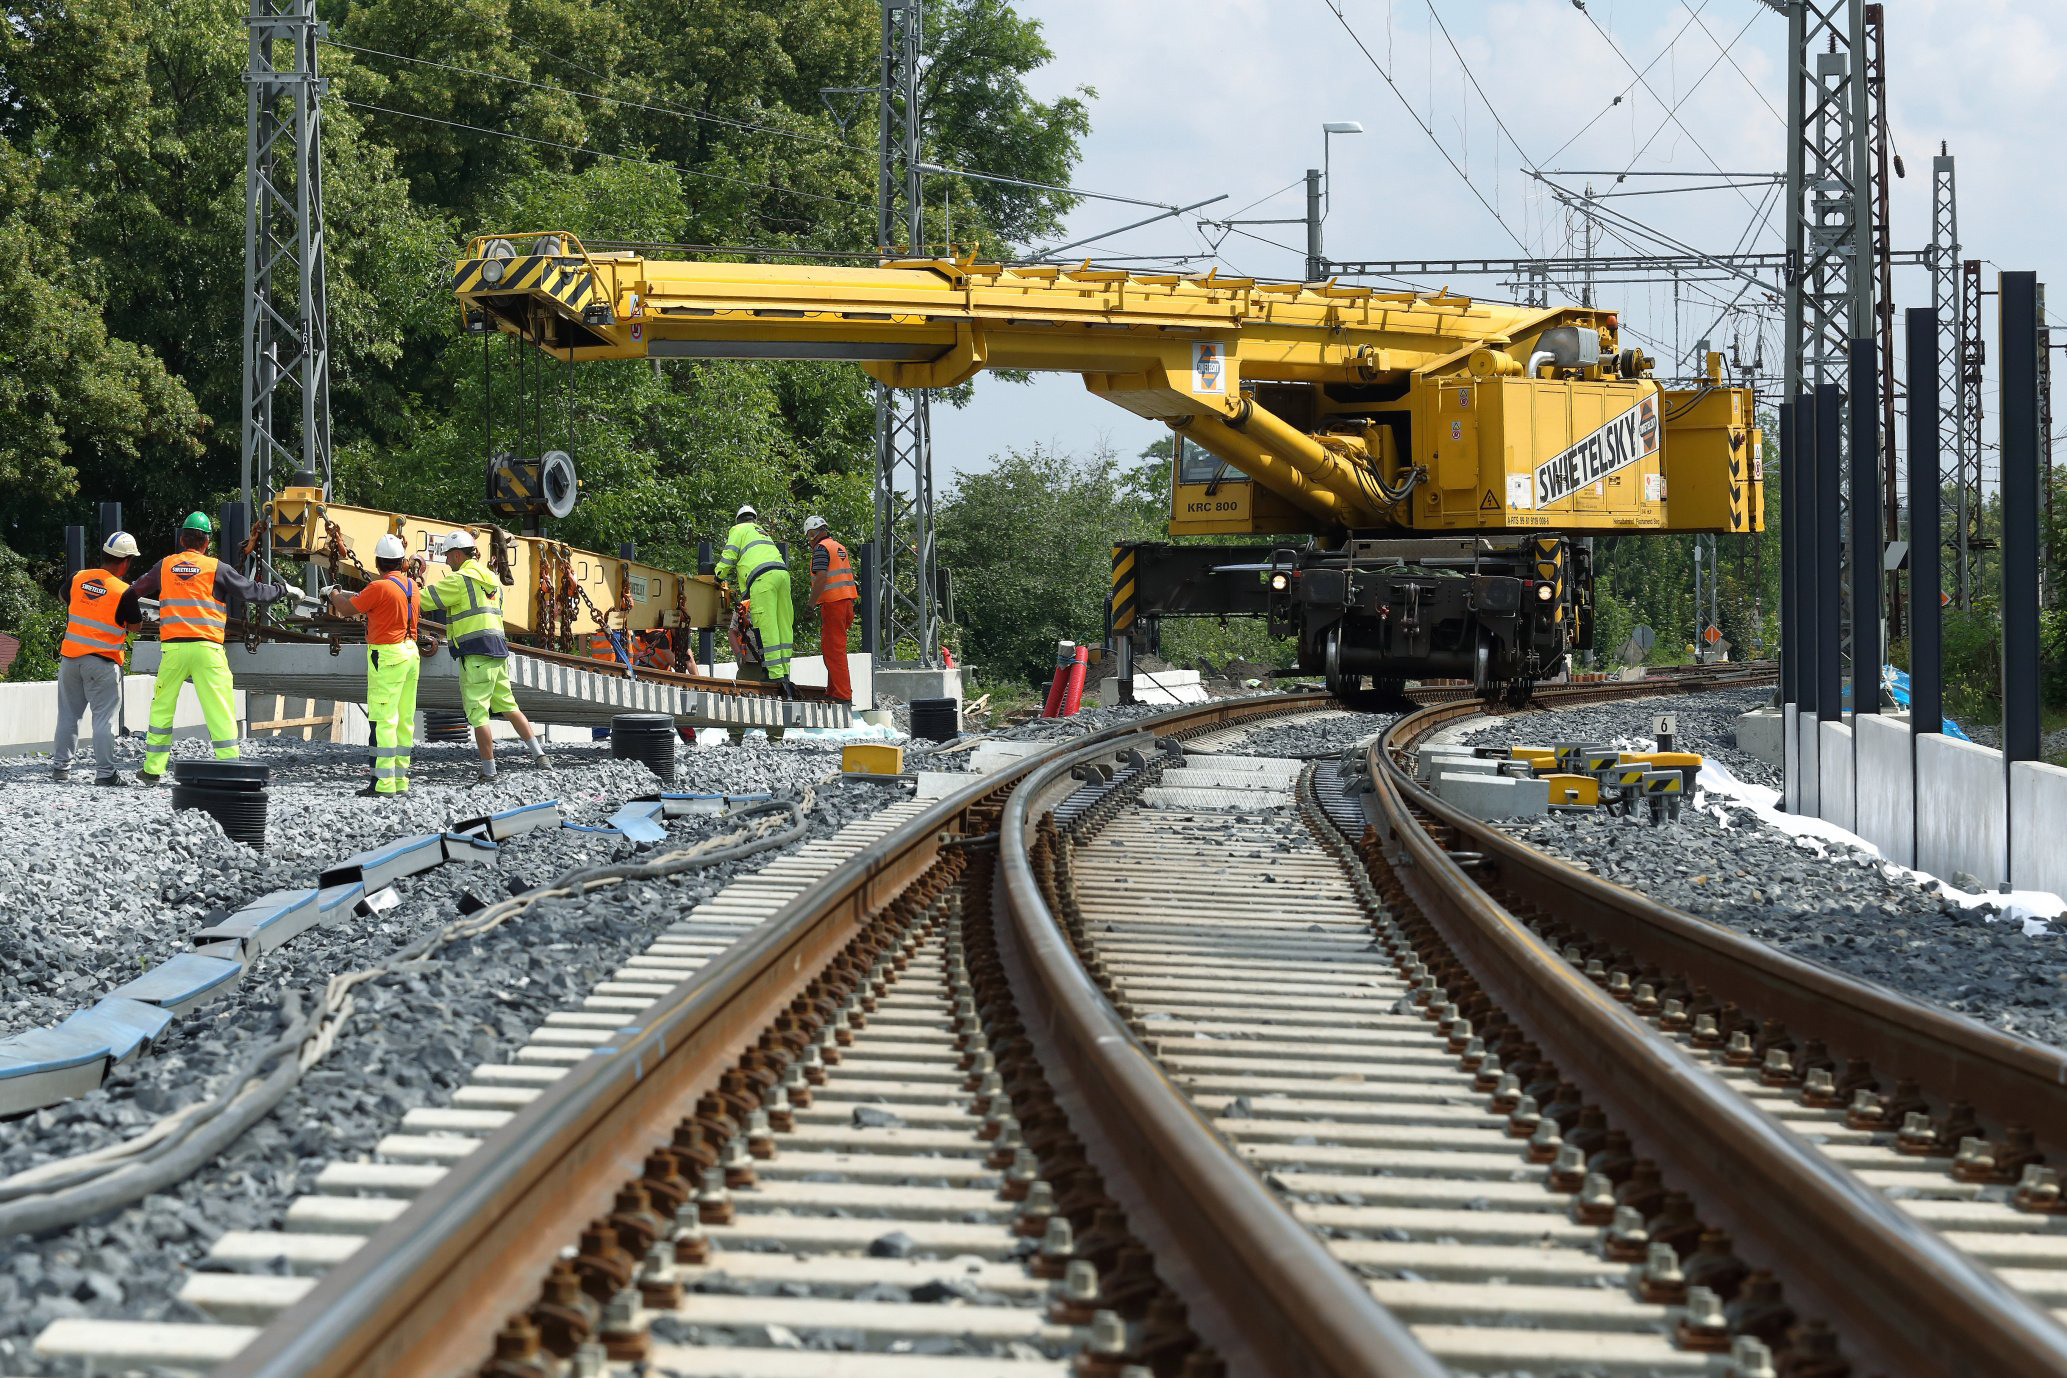 Obnova železniční stanice, Čelákovice - Spoorwegbouw